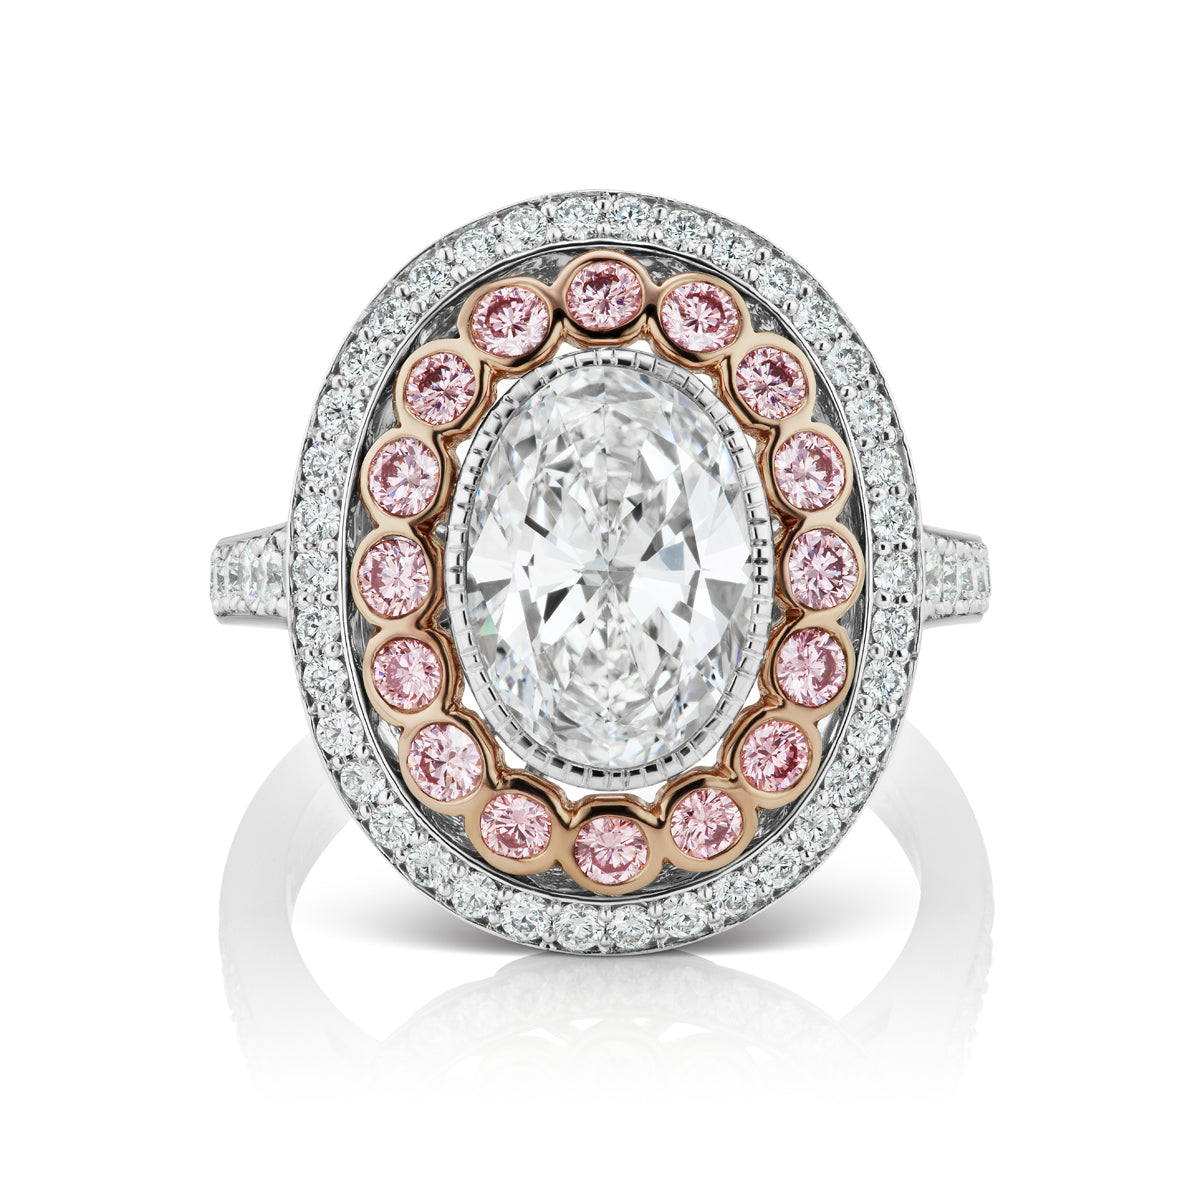 Rare Large Pink Diamond Ring